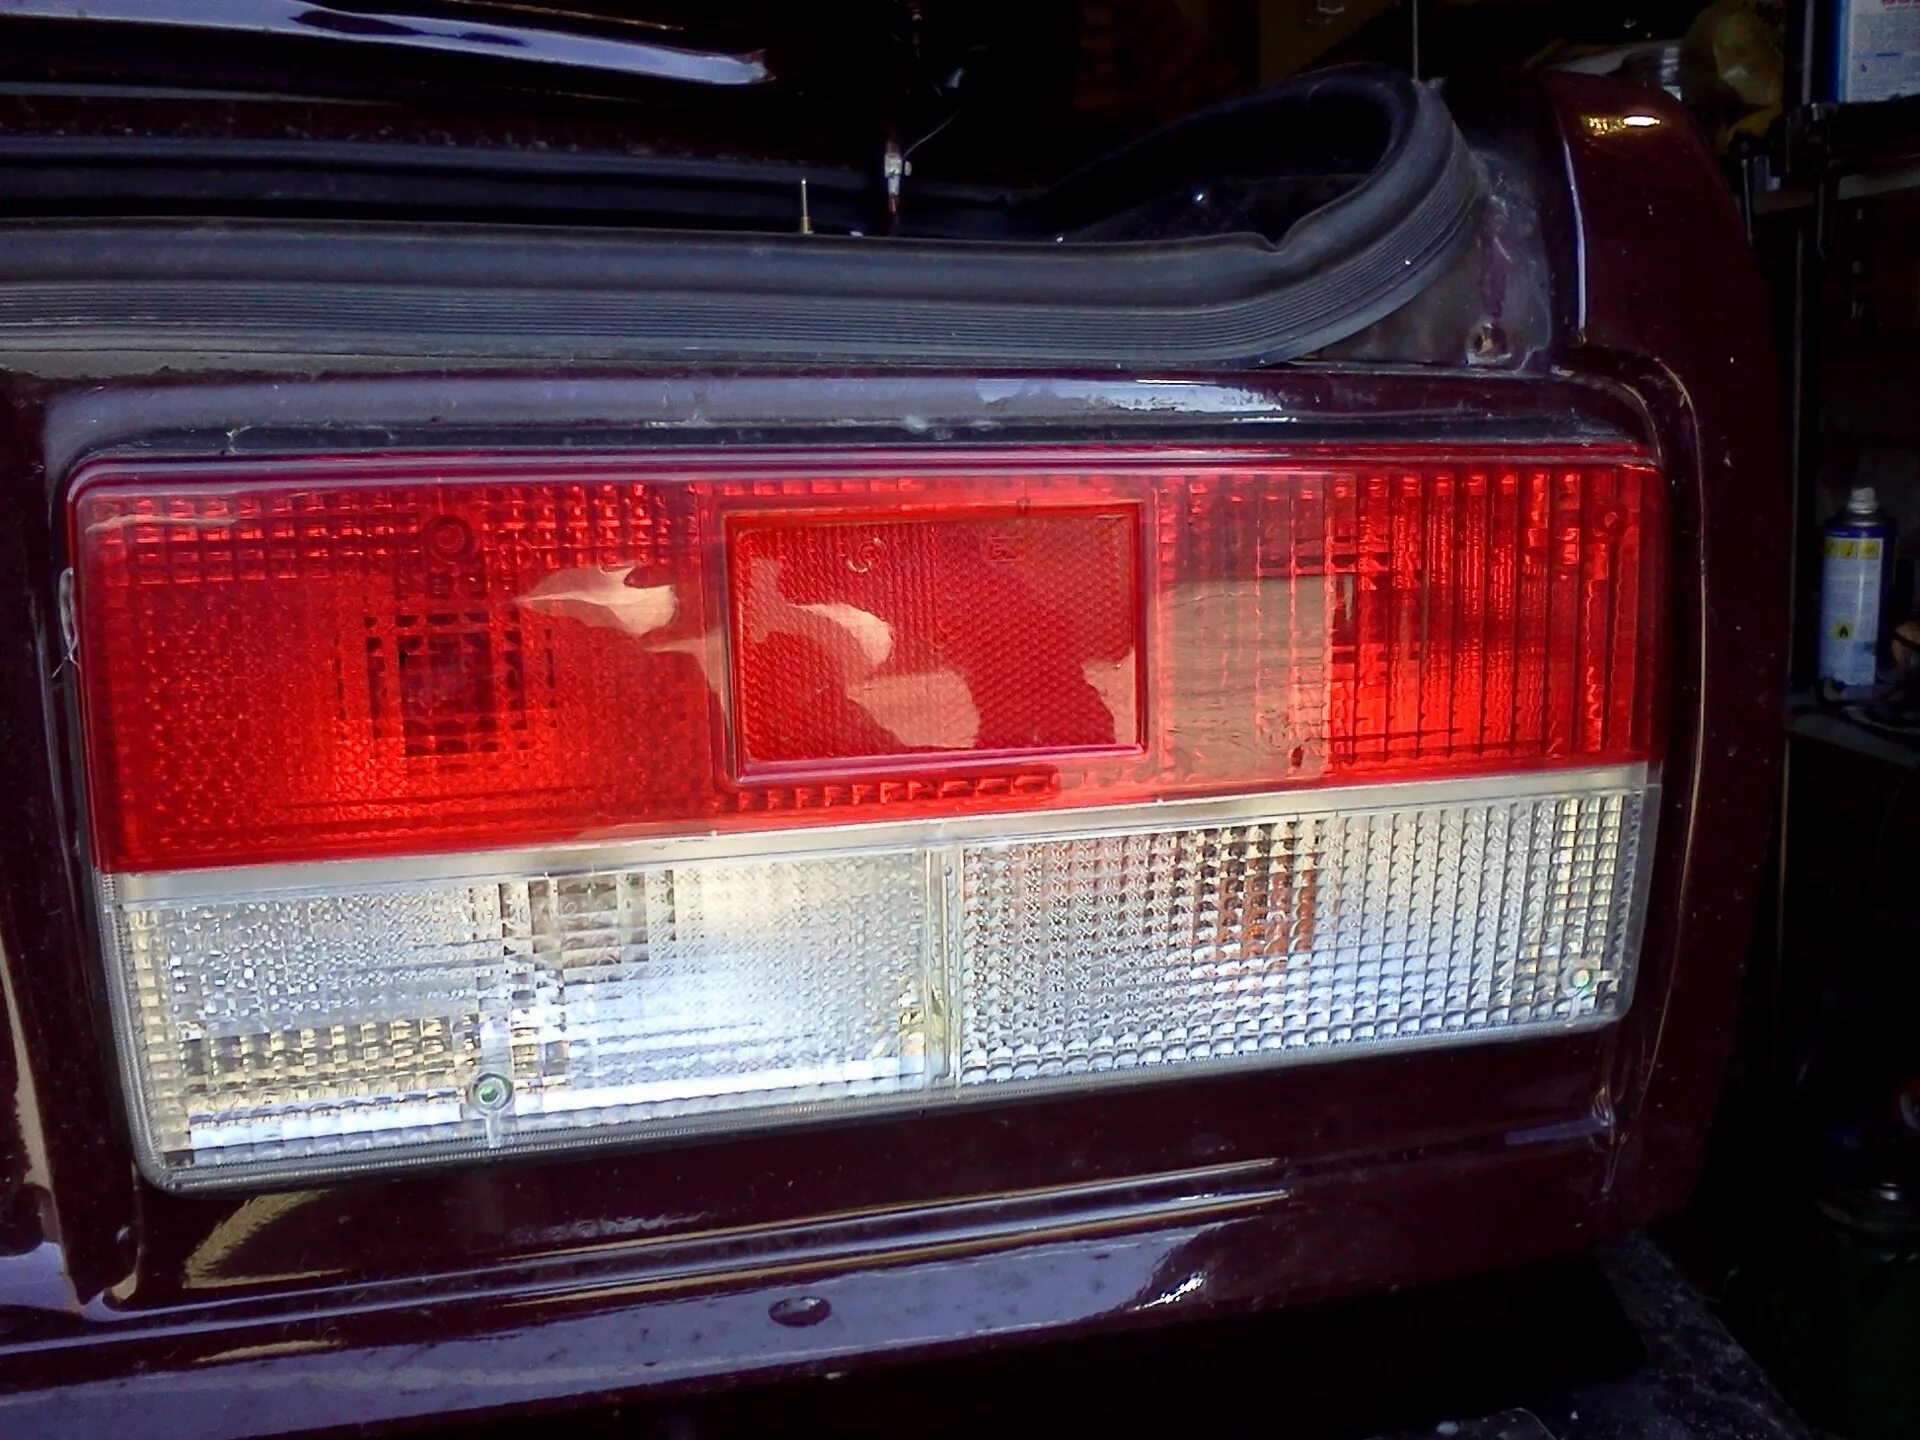 Задние фонари ВАЗ 2107 красно белые. Задние фонари ВАЗ 2107 габариты. Отражатель заднего фонаря ВАЗ 2107. Фонари ВАЗ 2107. Поворотник фары задний